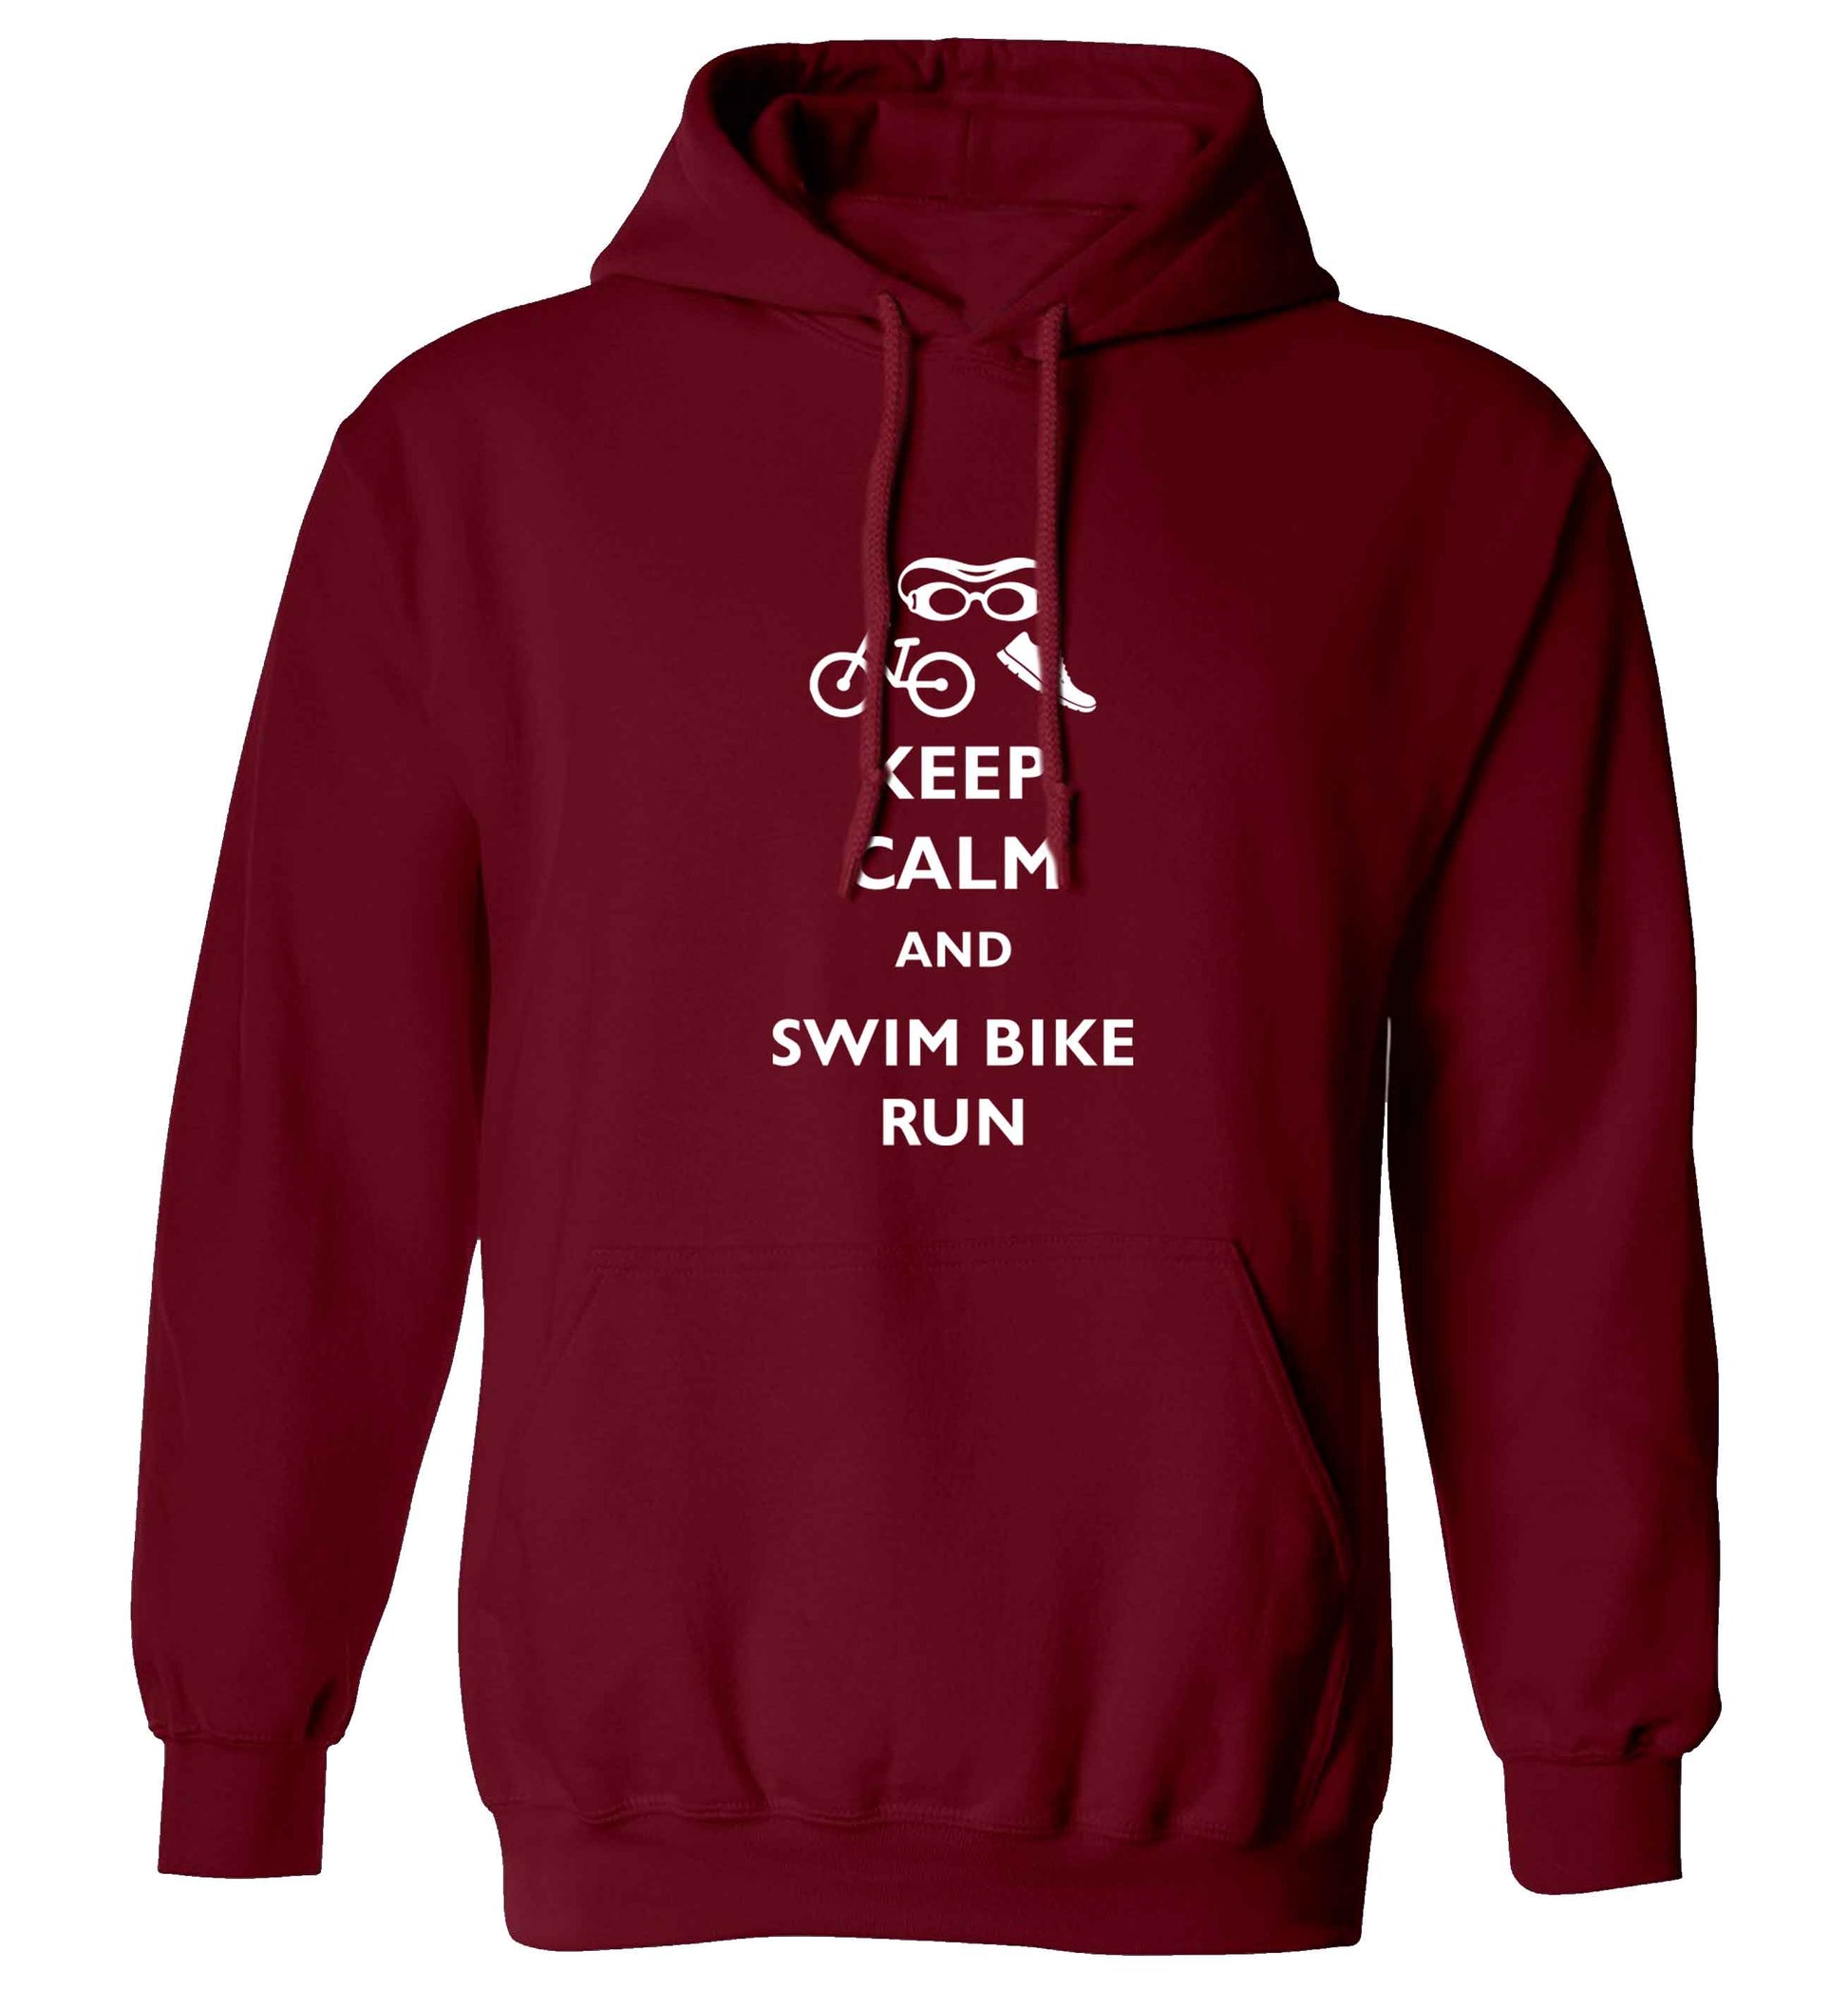 Keep calm and swim bike run adults unisex maroon hoodie 2XL